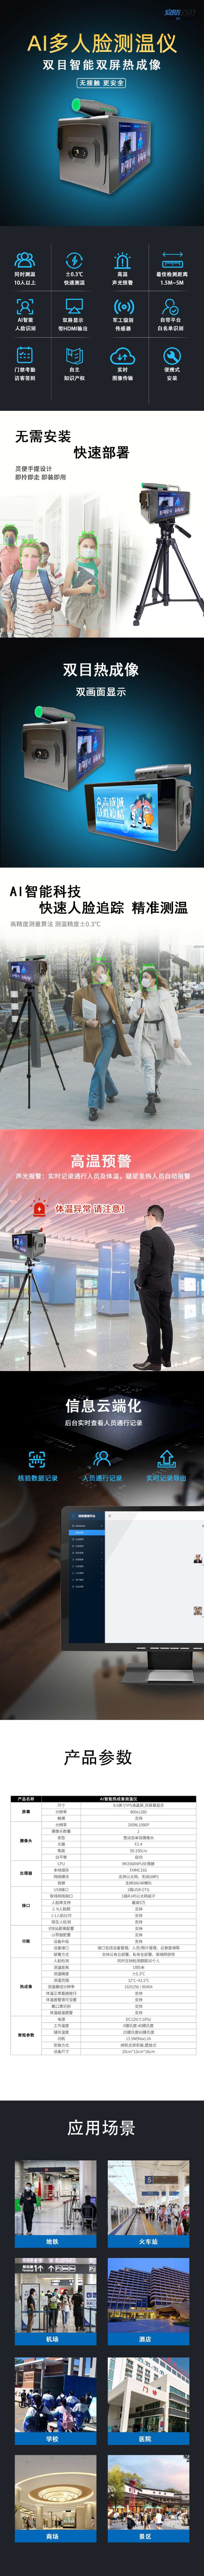 【AI双屏多人测温仪】- 多人测温、人脸识别； -【广州网视通信息科技有限公司】